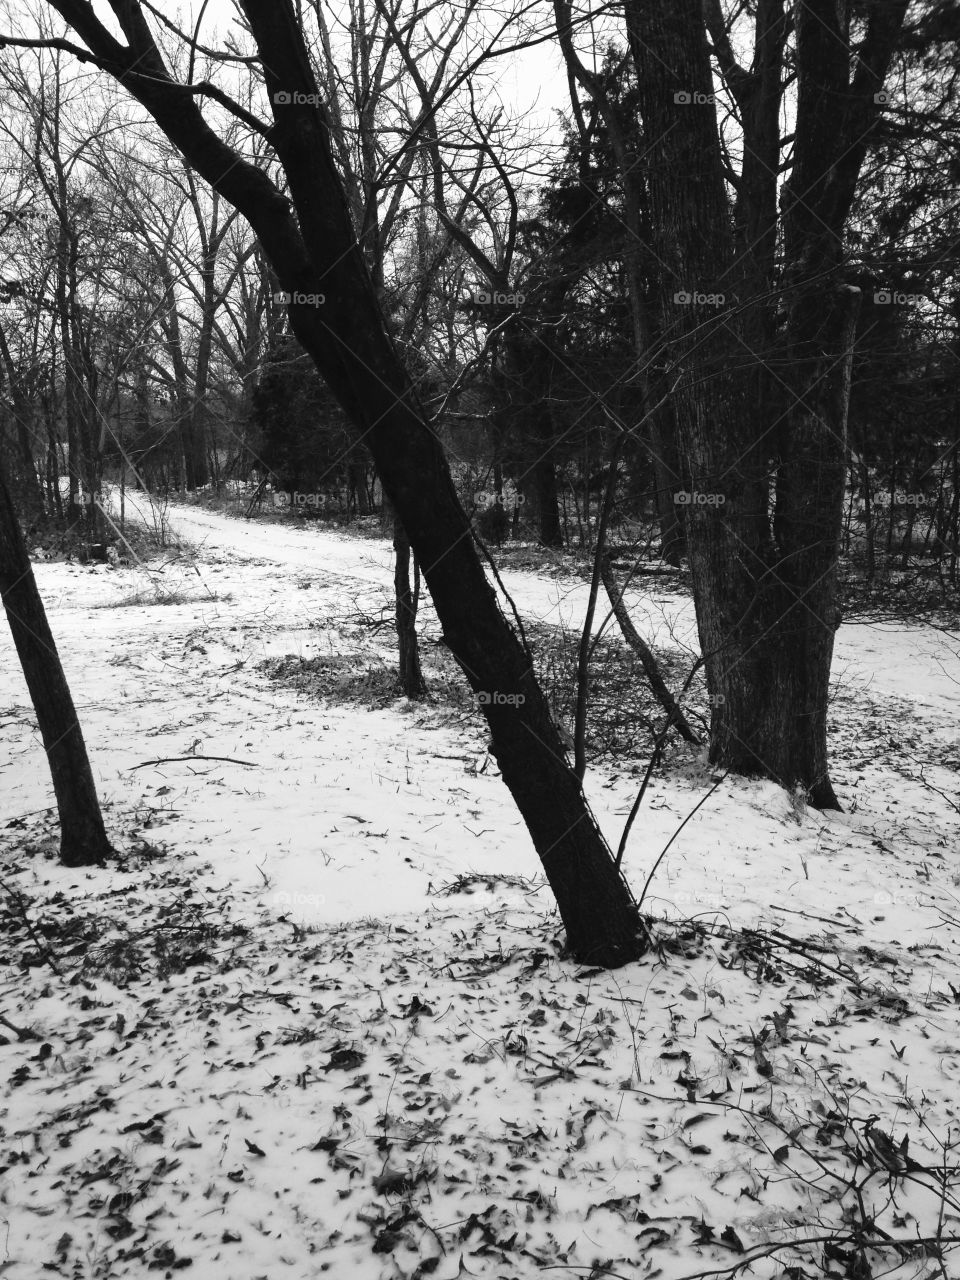 Snow in 
black&white